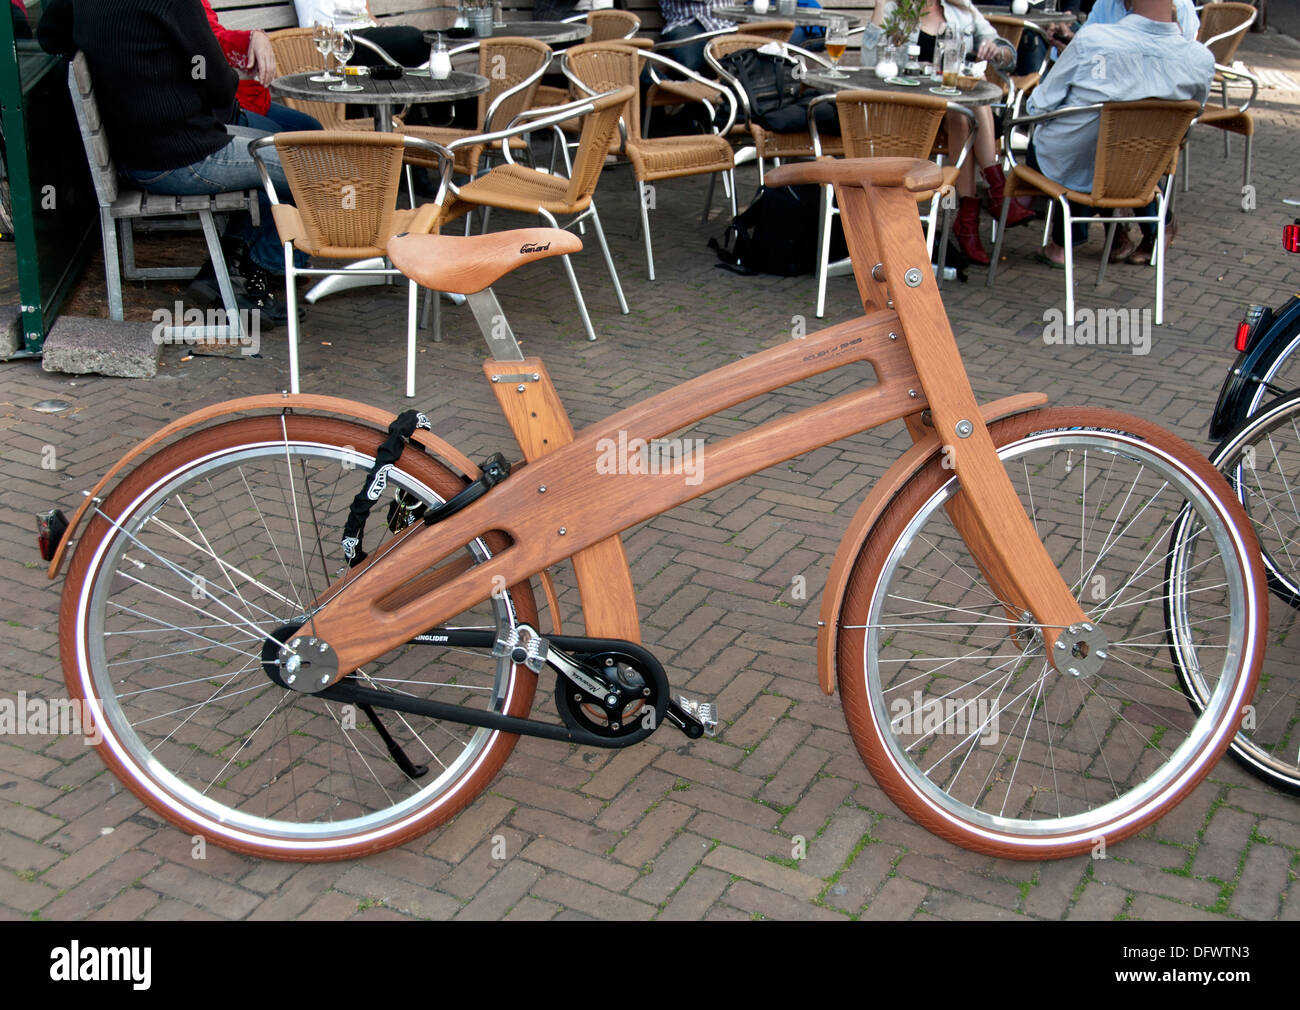 Bicicletta di legno immagini e fotografie stock ad alta risoluzione - Alamy